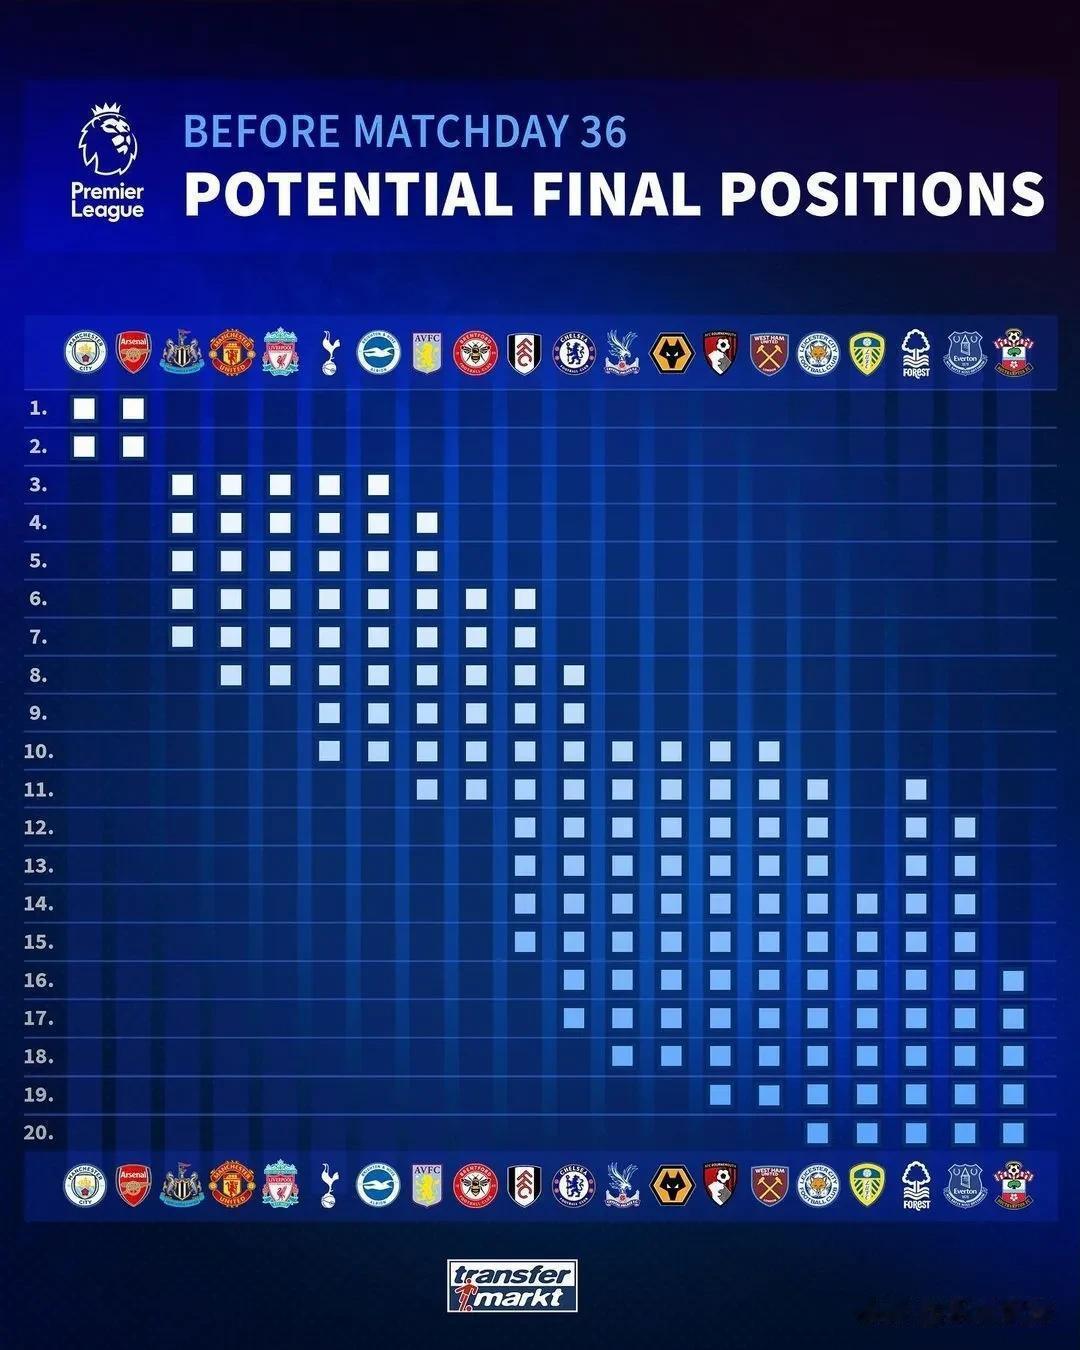 英超、西甲和德甲联赛，各支球队理论上的最终排名。切尔西提前保级成功，西甲有14支